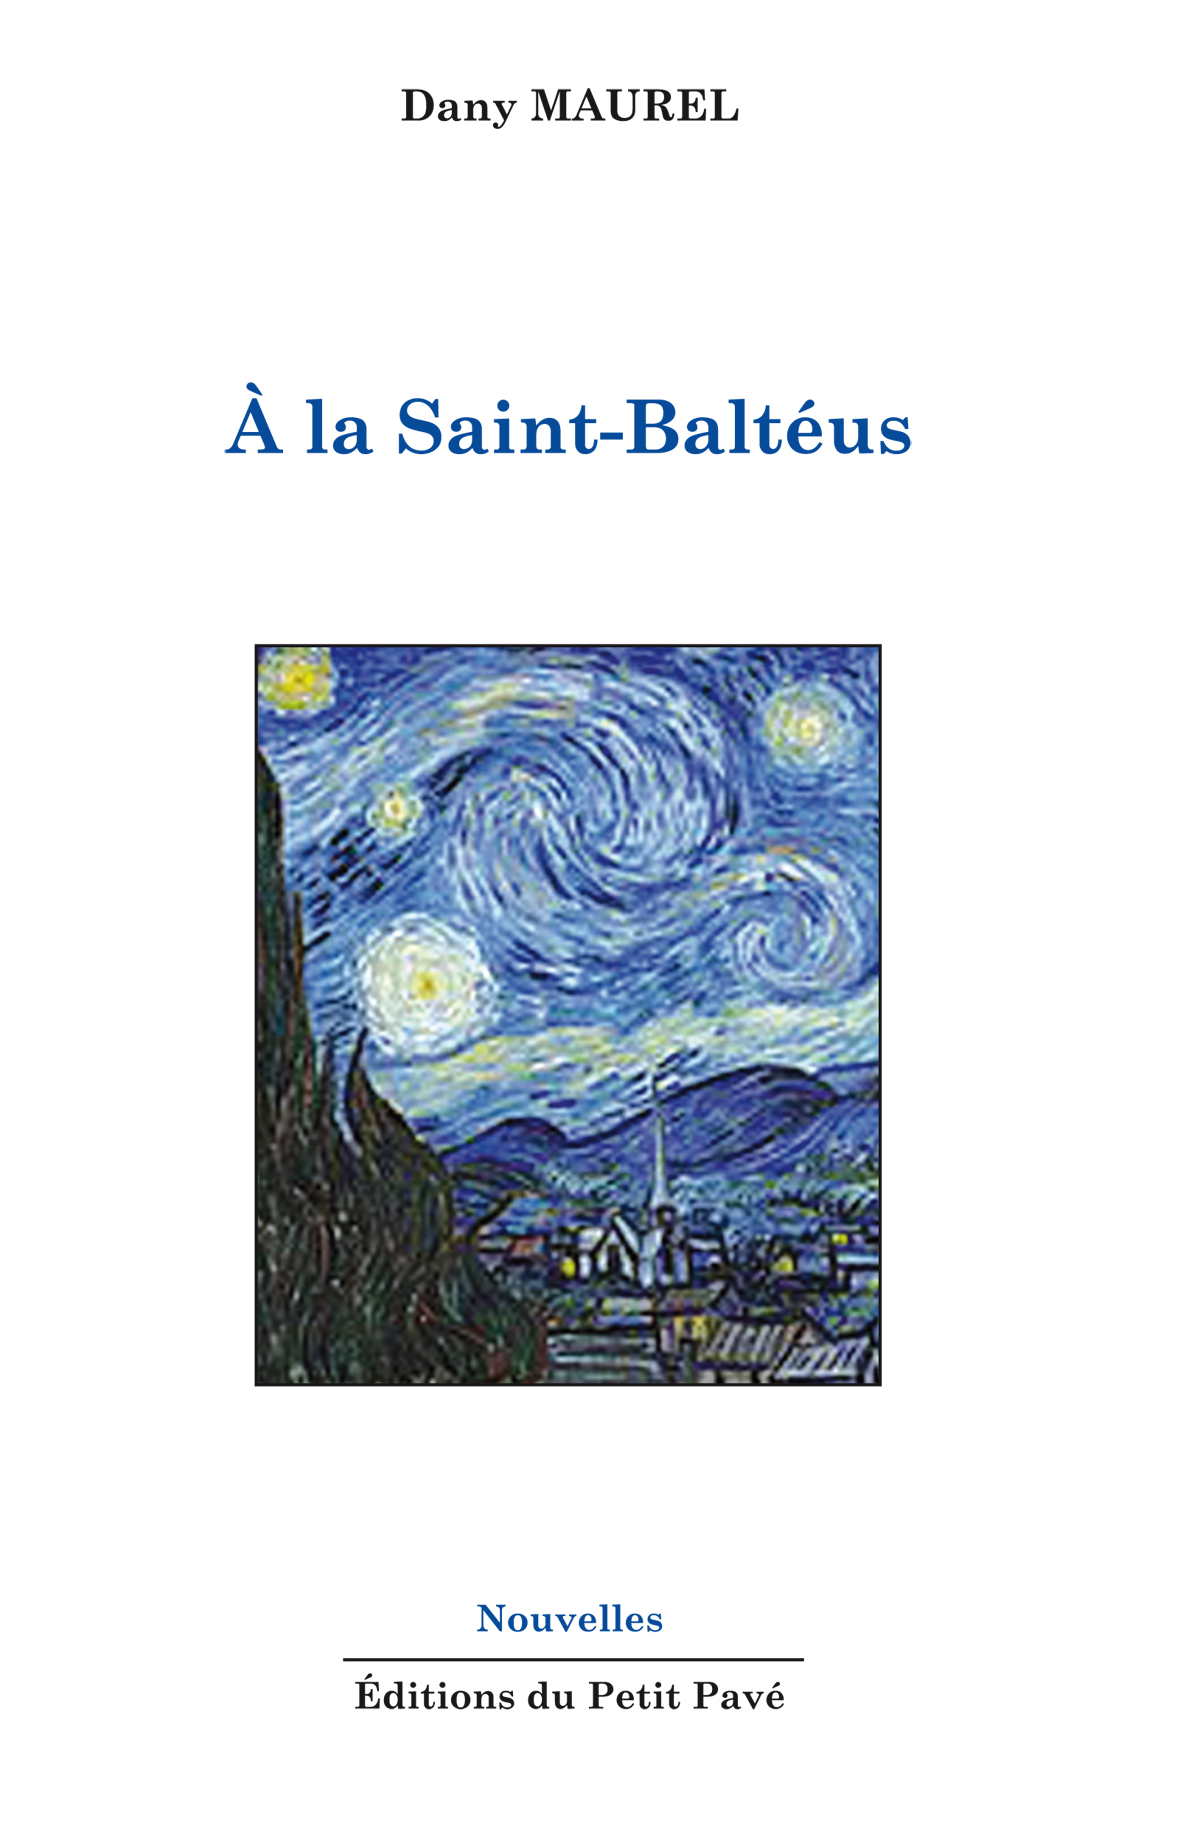 À la Saint-Baltéus - Photo a_la_saint-balteus_de_dany_maurel_aux_editions_du_petit_pave.jpg